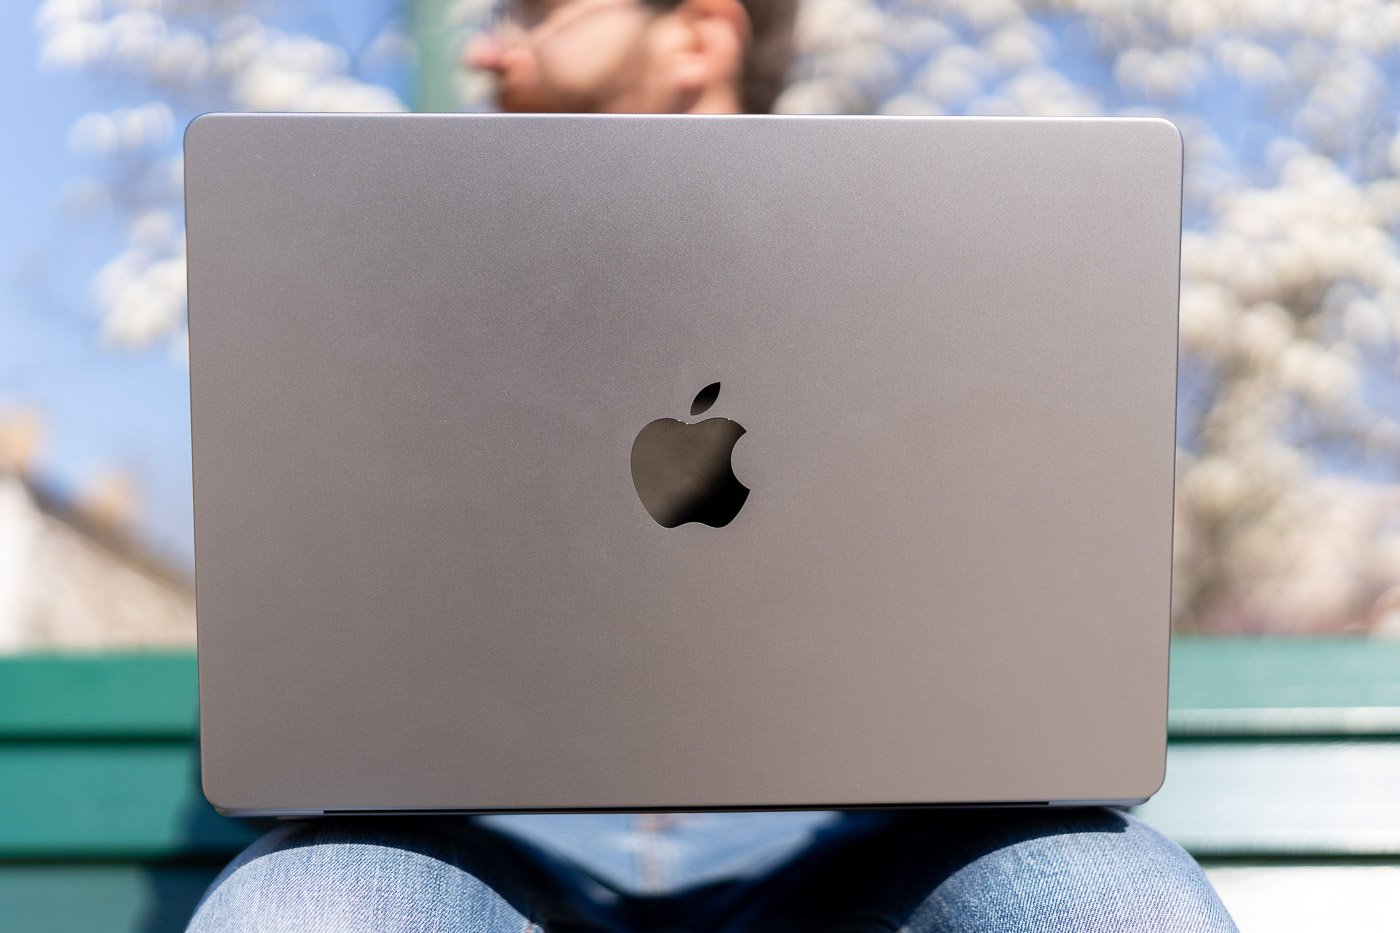 Mon Avis Honnête sur le MacBook Pro 16 pouces (Test, Montage, Photo)